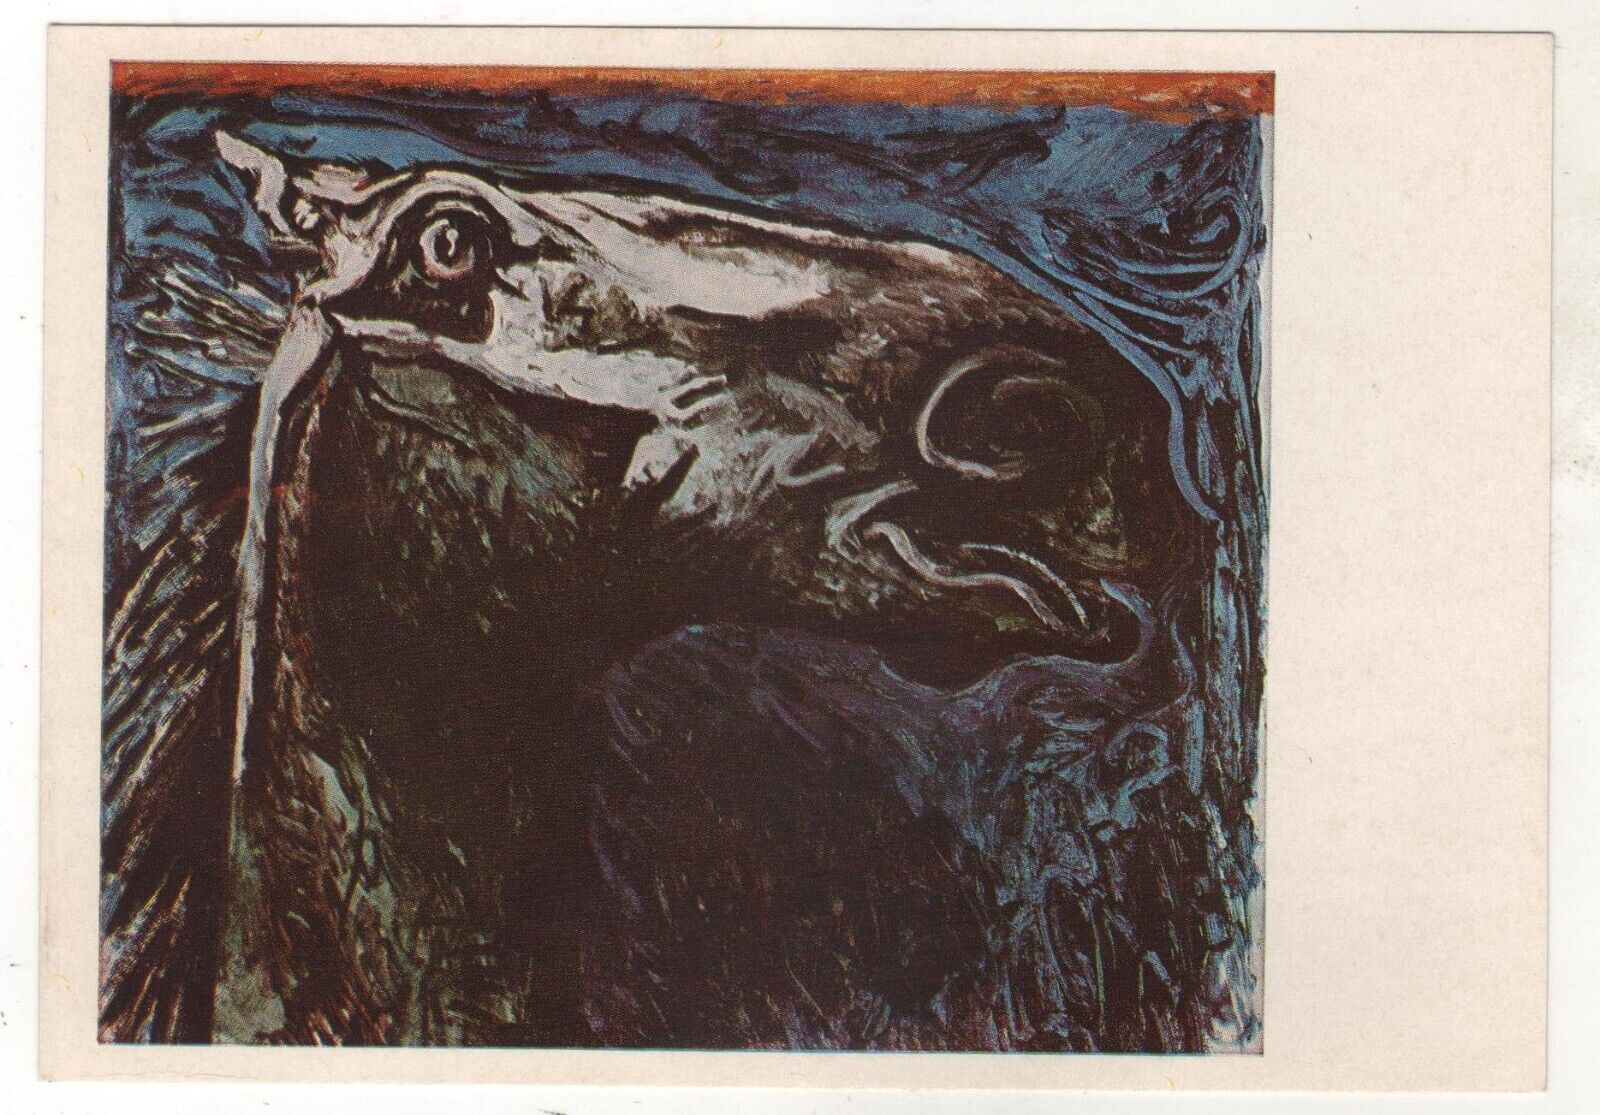 1979 Horse head by Renato Guttuso OLD Soviet Russian Postcard